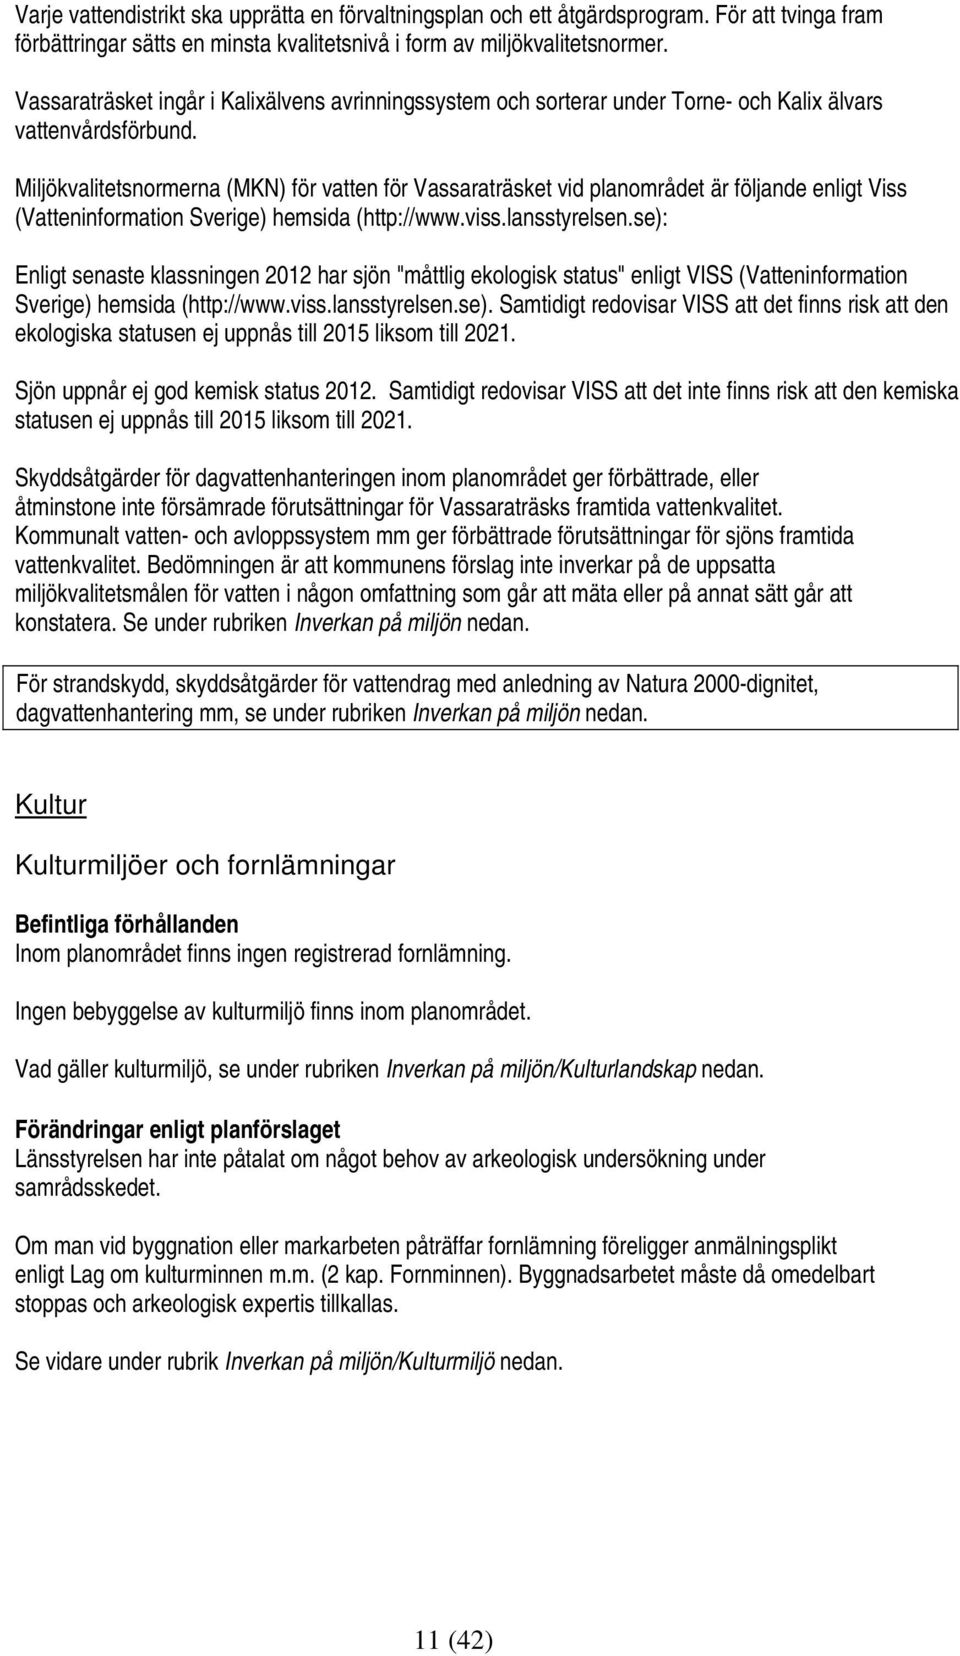 Miljökvalitetsnormerna (MKN) för vatten för Vassaraträsket vid planområdet är följande enligt Viss (Vatteninformation Sverige) hemsida (http://www.viss.lansstyrelsen.